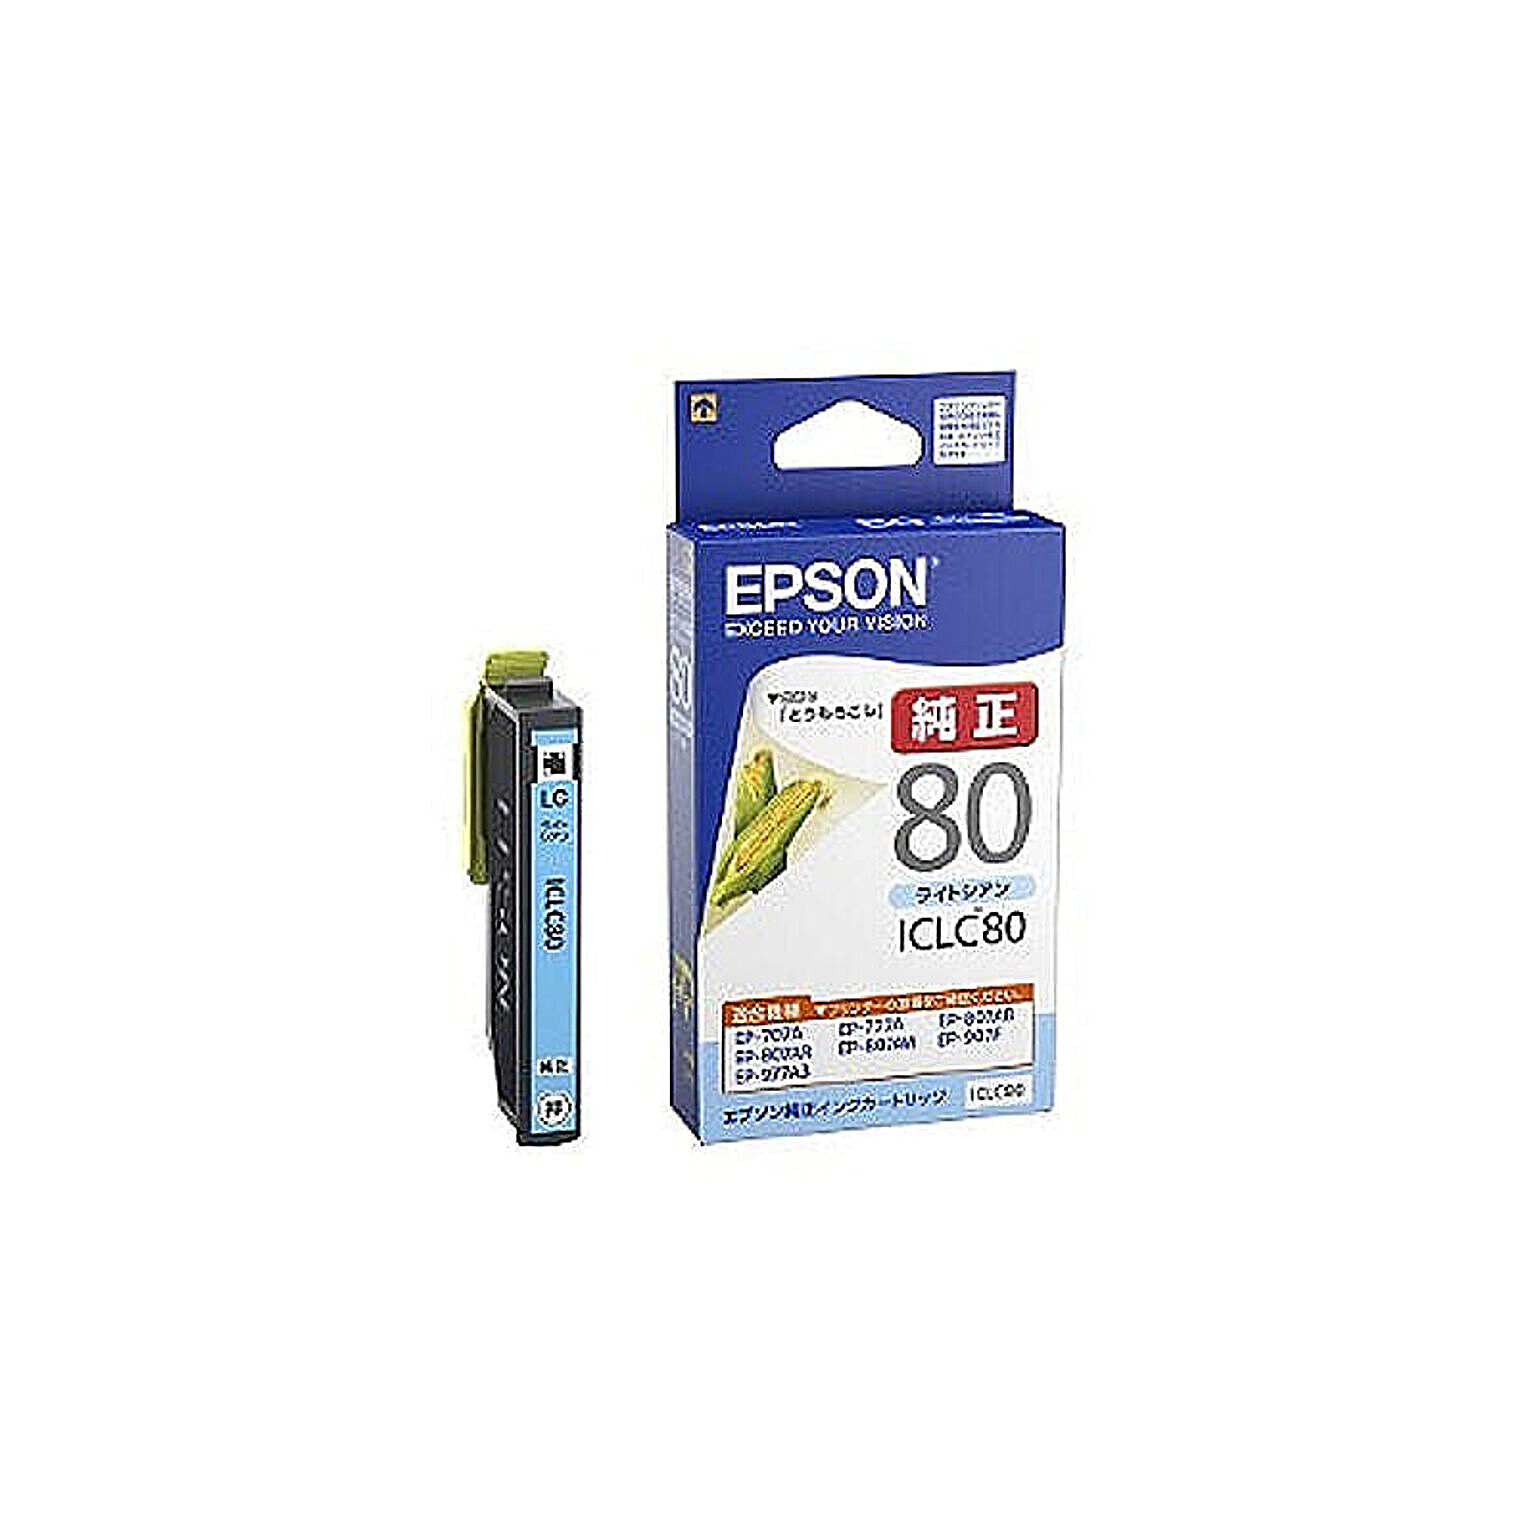 エプソン EPSON 純正インクカートリッジ  ICLC80 ライトシアン 管理No. 4988617193970